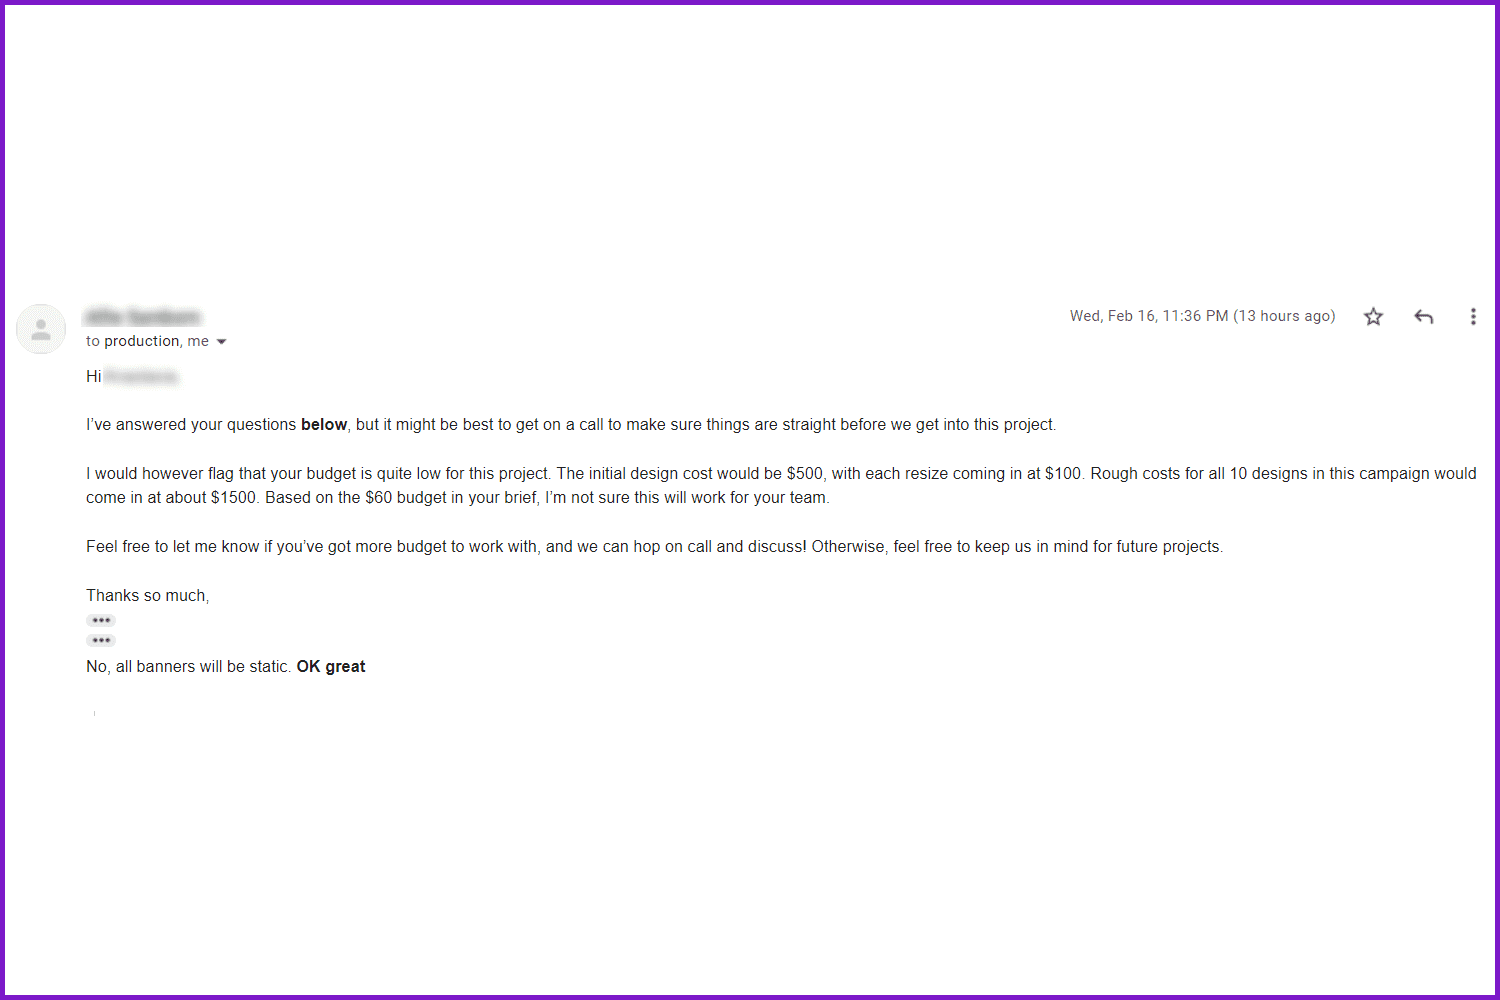 Respond letter from WeAreTheBanner.